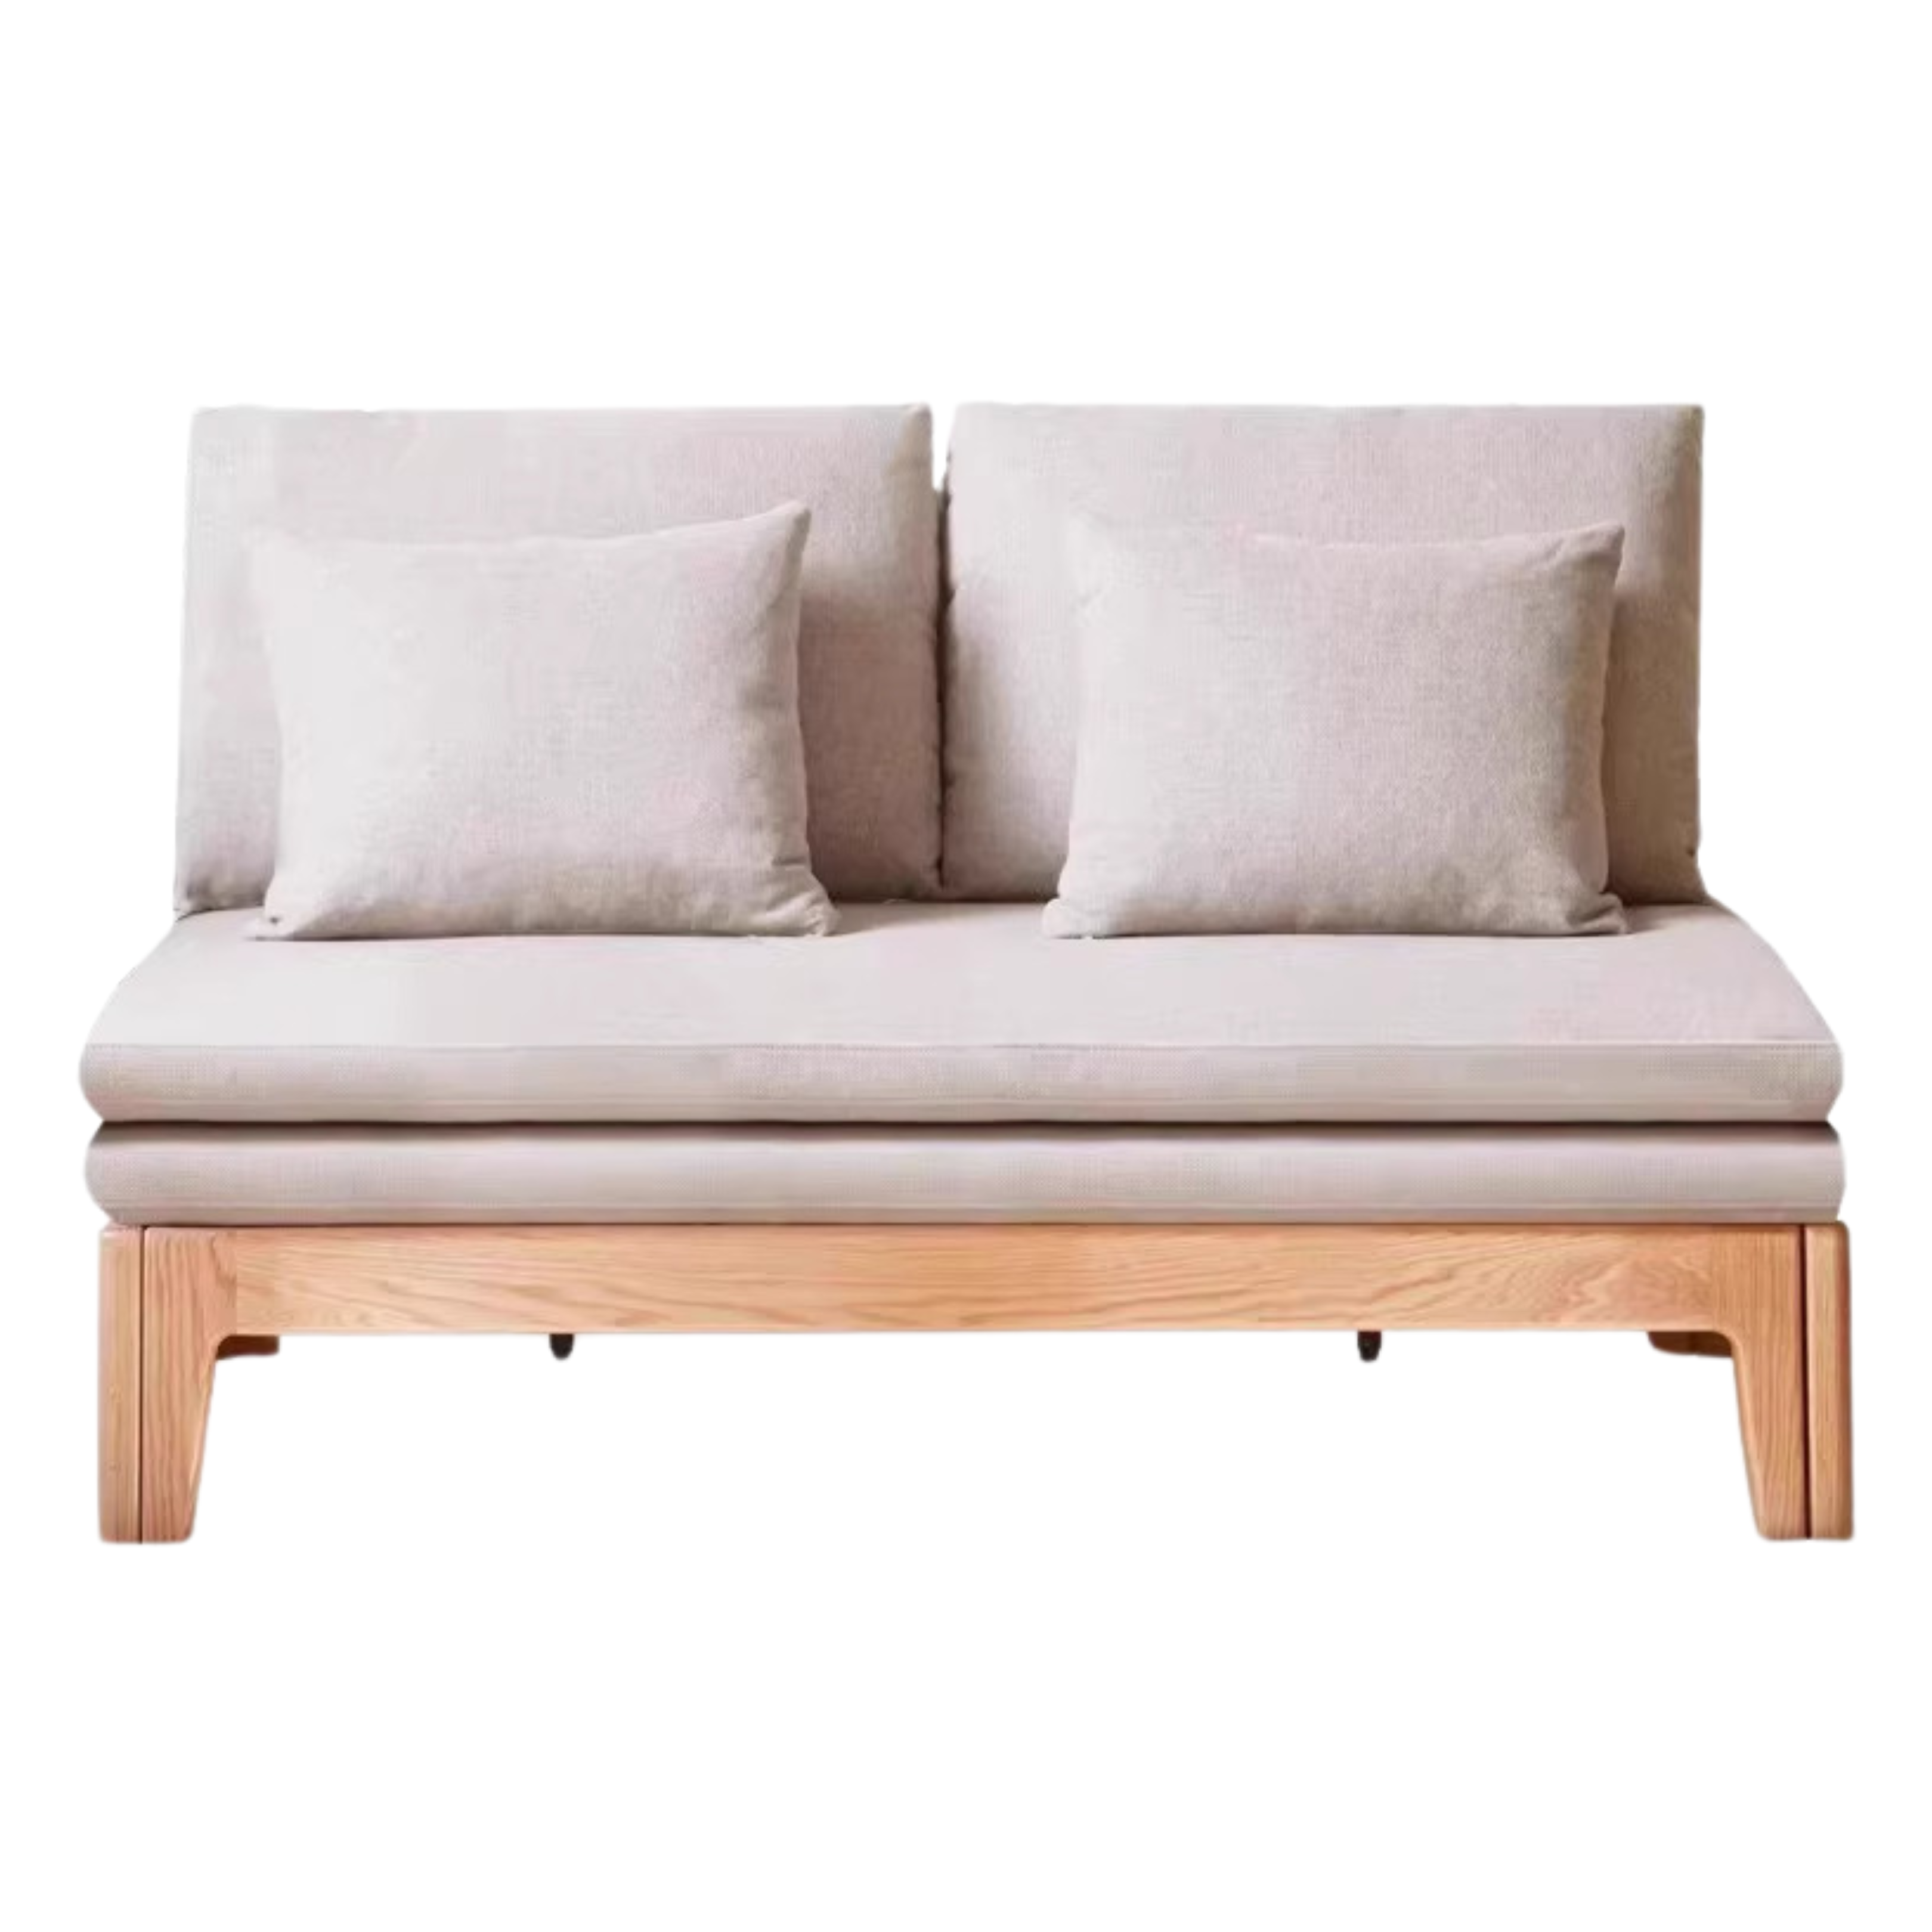 Oak solid wood Sofa bed